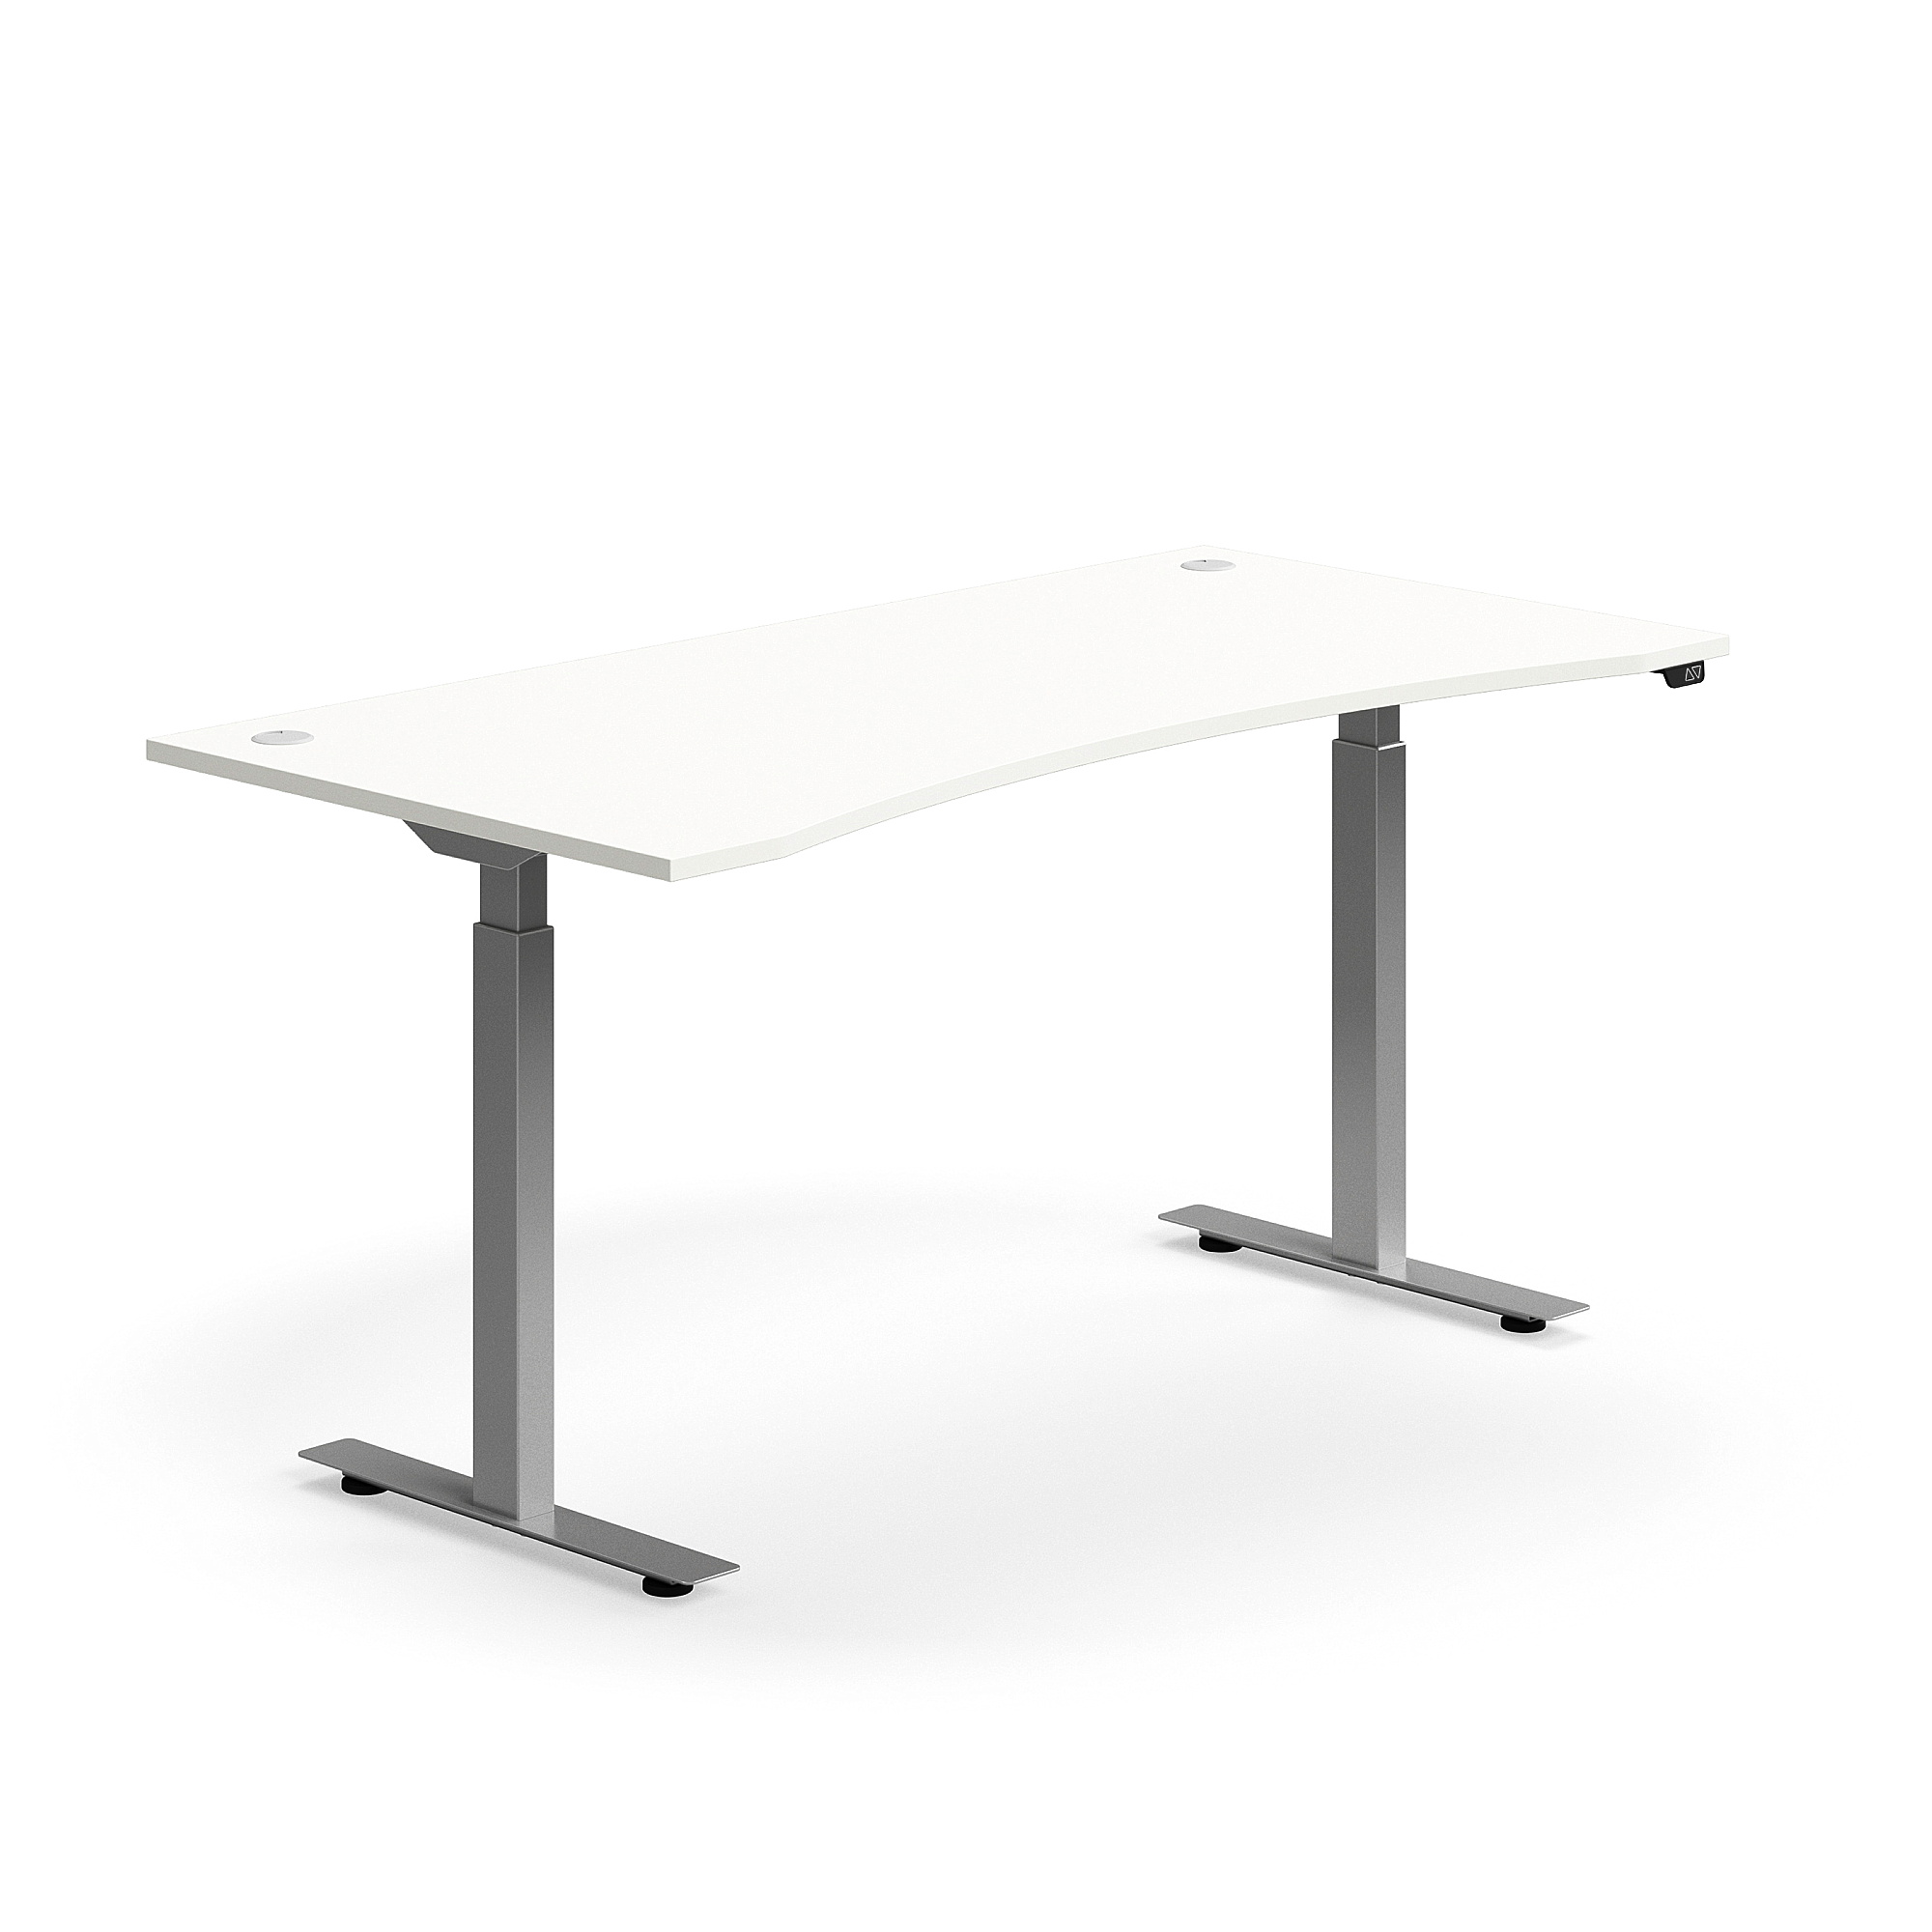 Výškově nastavitelný stůl FLEXUS, vykrojený, 1600x800 mm, stříbrná podnož, bílá